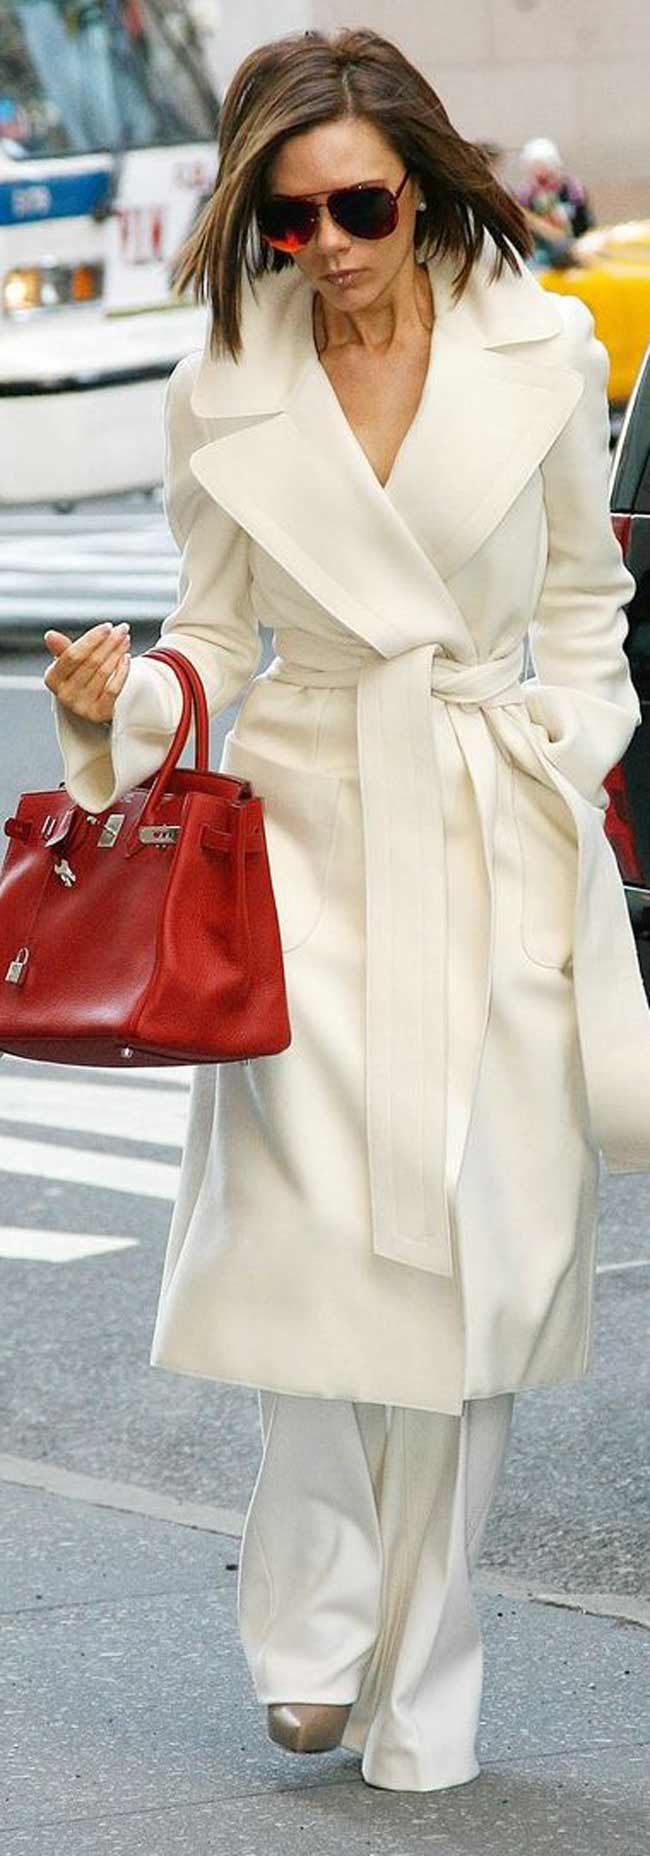 Manteau blanc et sac rouge